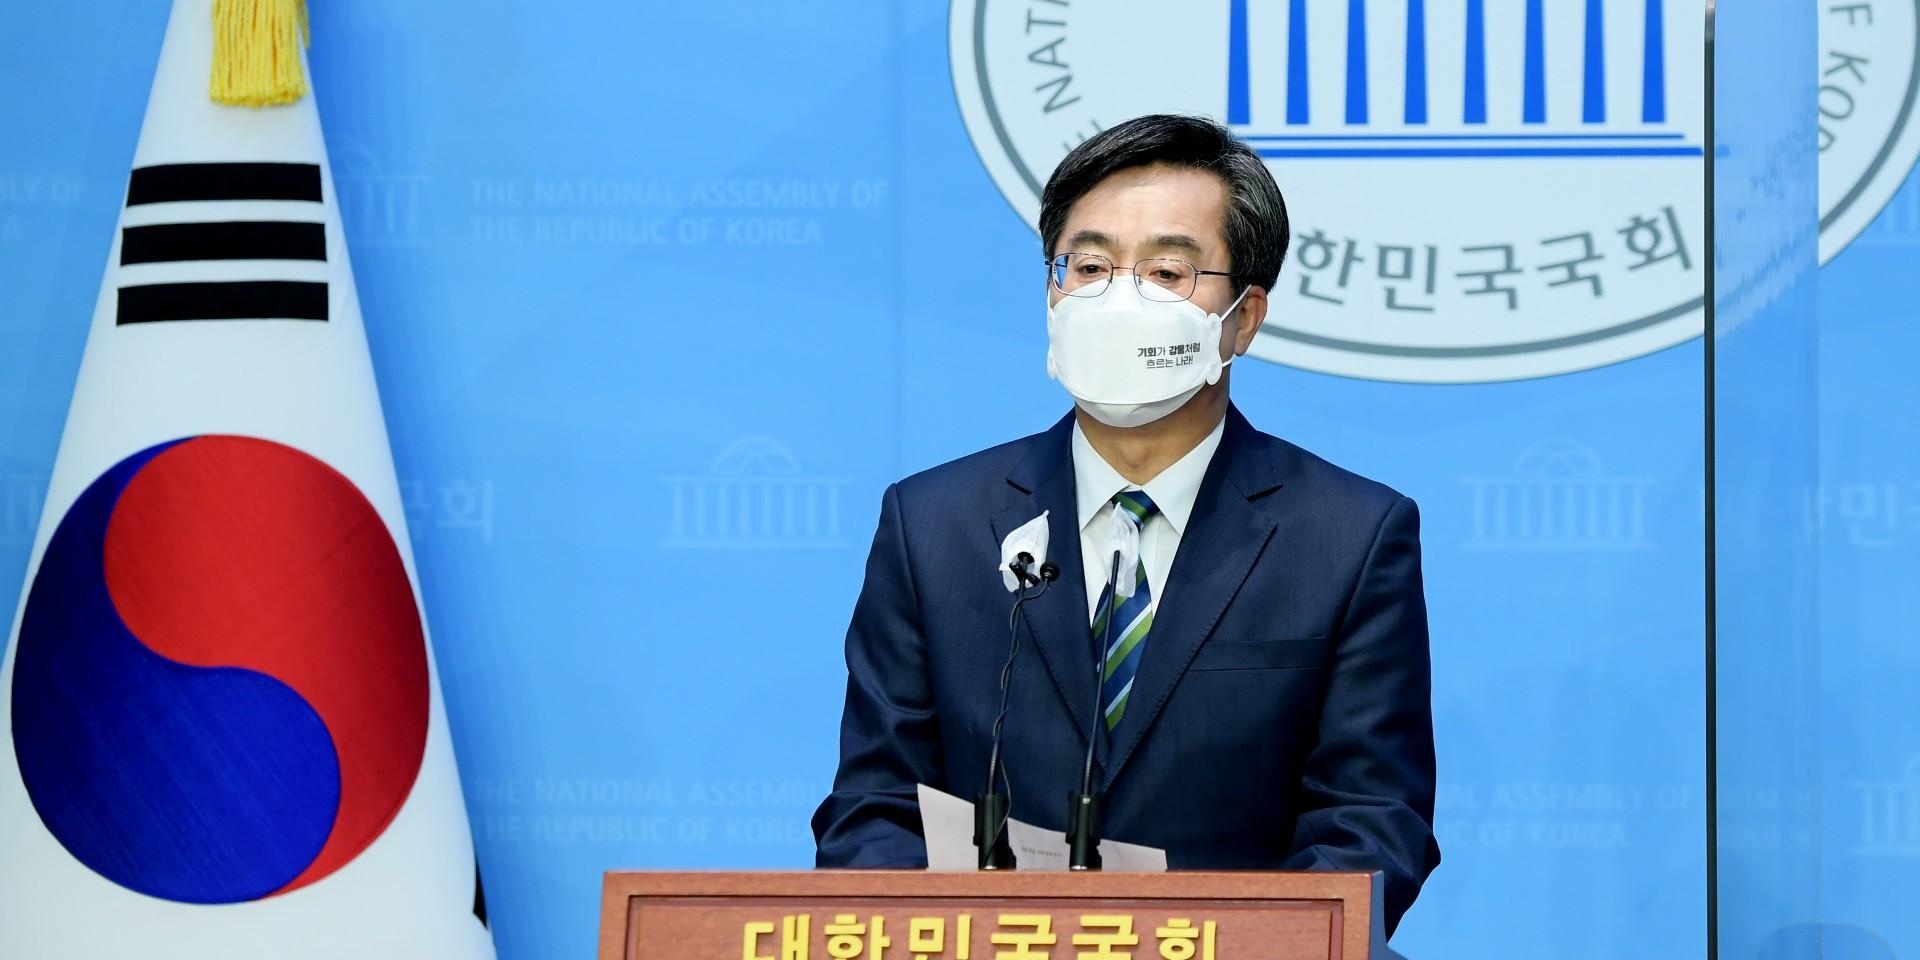 김동연 민주당과 합당 선언, "지방선거 출마 문제 이번 주 결정할 것"